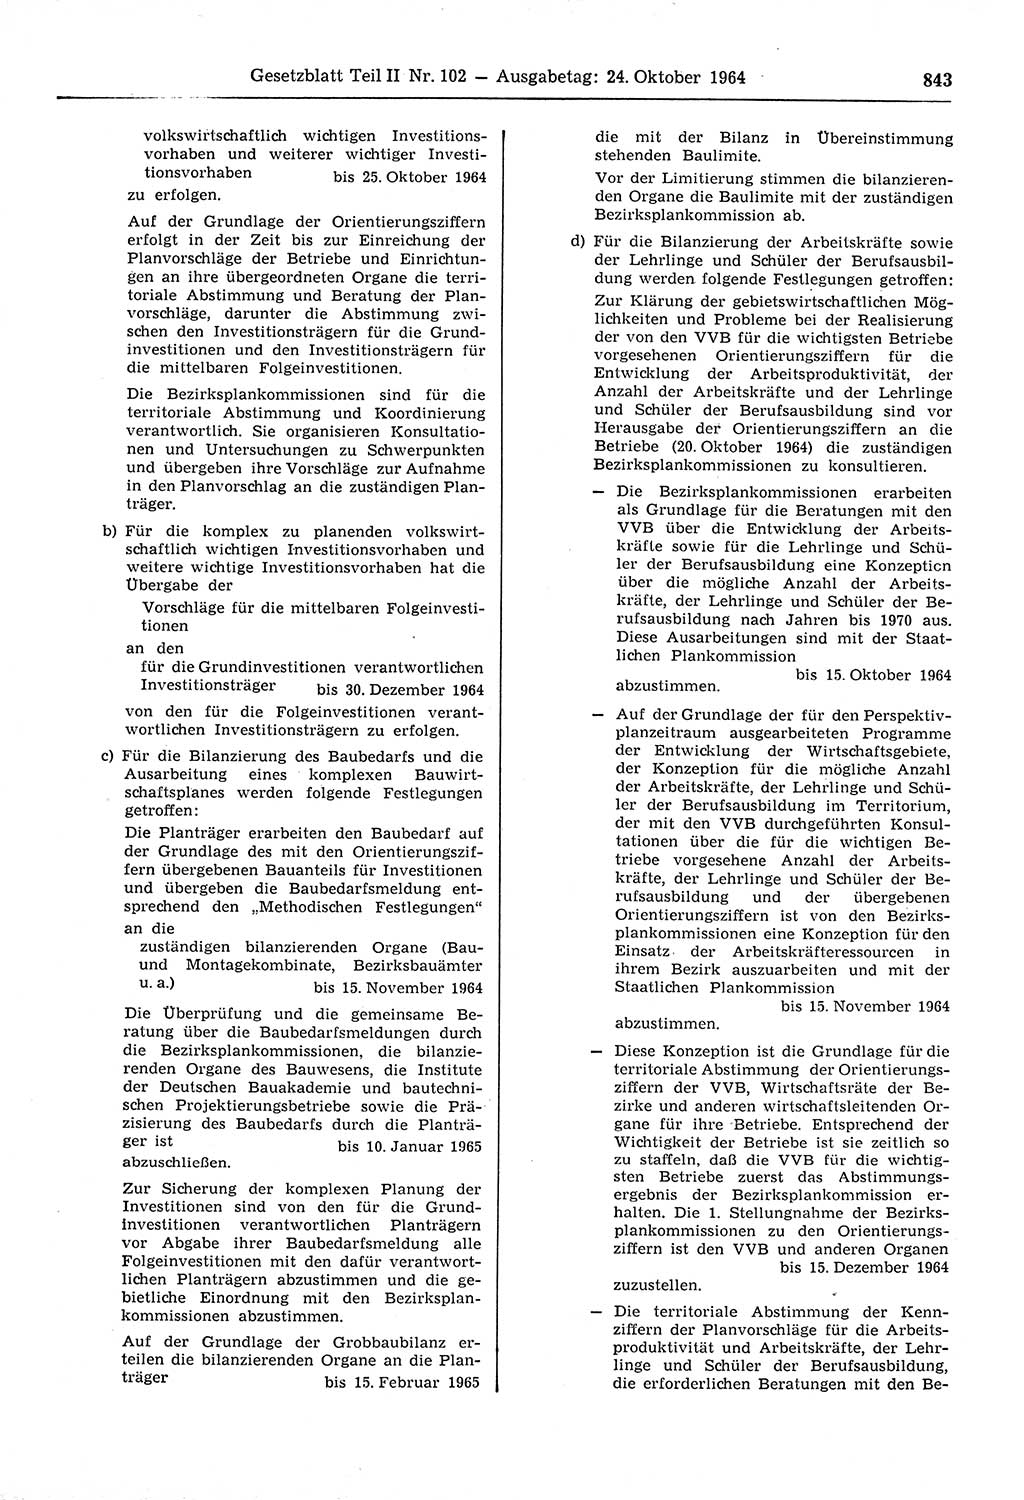 Gesetzblatt (GBl.) der Deutschen Demokratischen Republik (DDR) Teil ⅠⅠ 1964, Seite 843 (GBl. DDR ⅠⅠ 1964, S. 843)